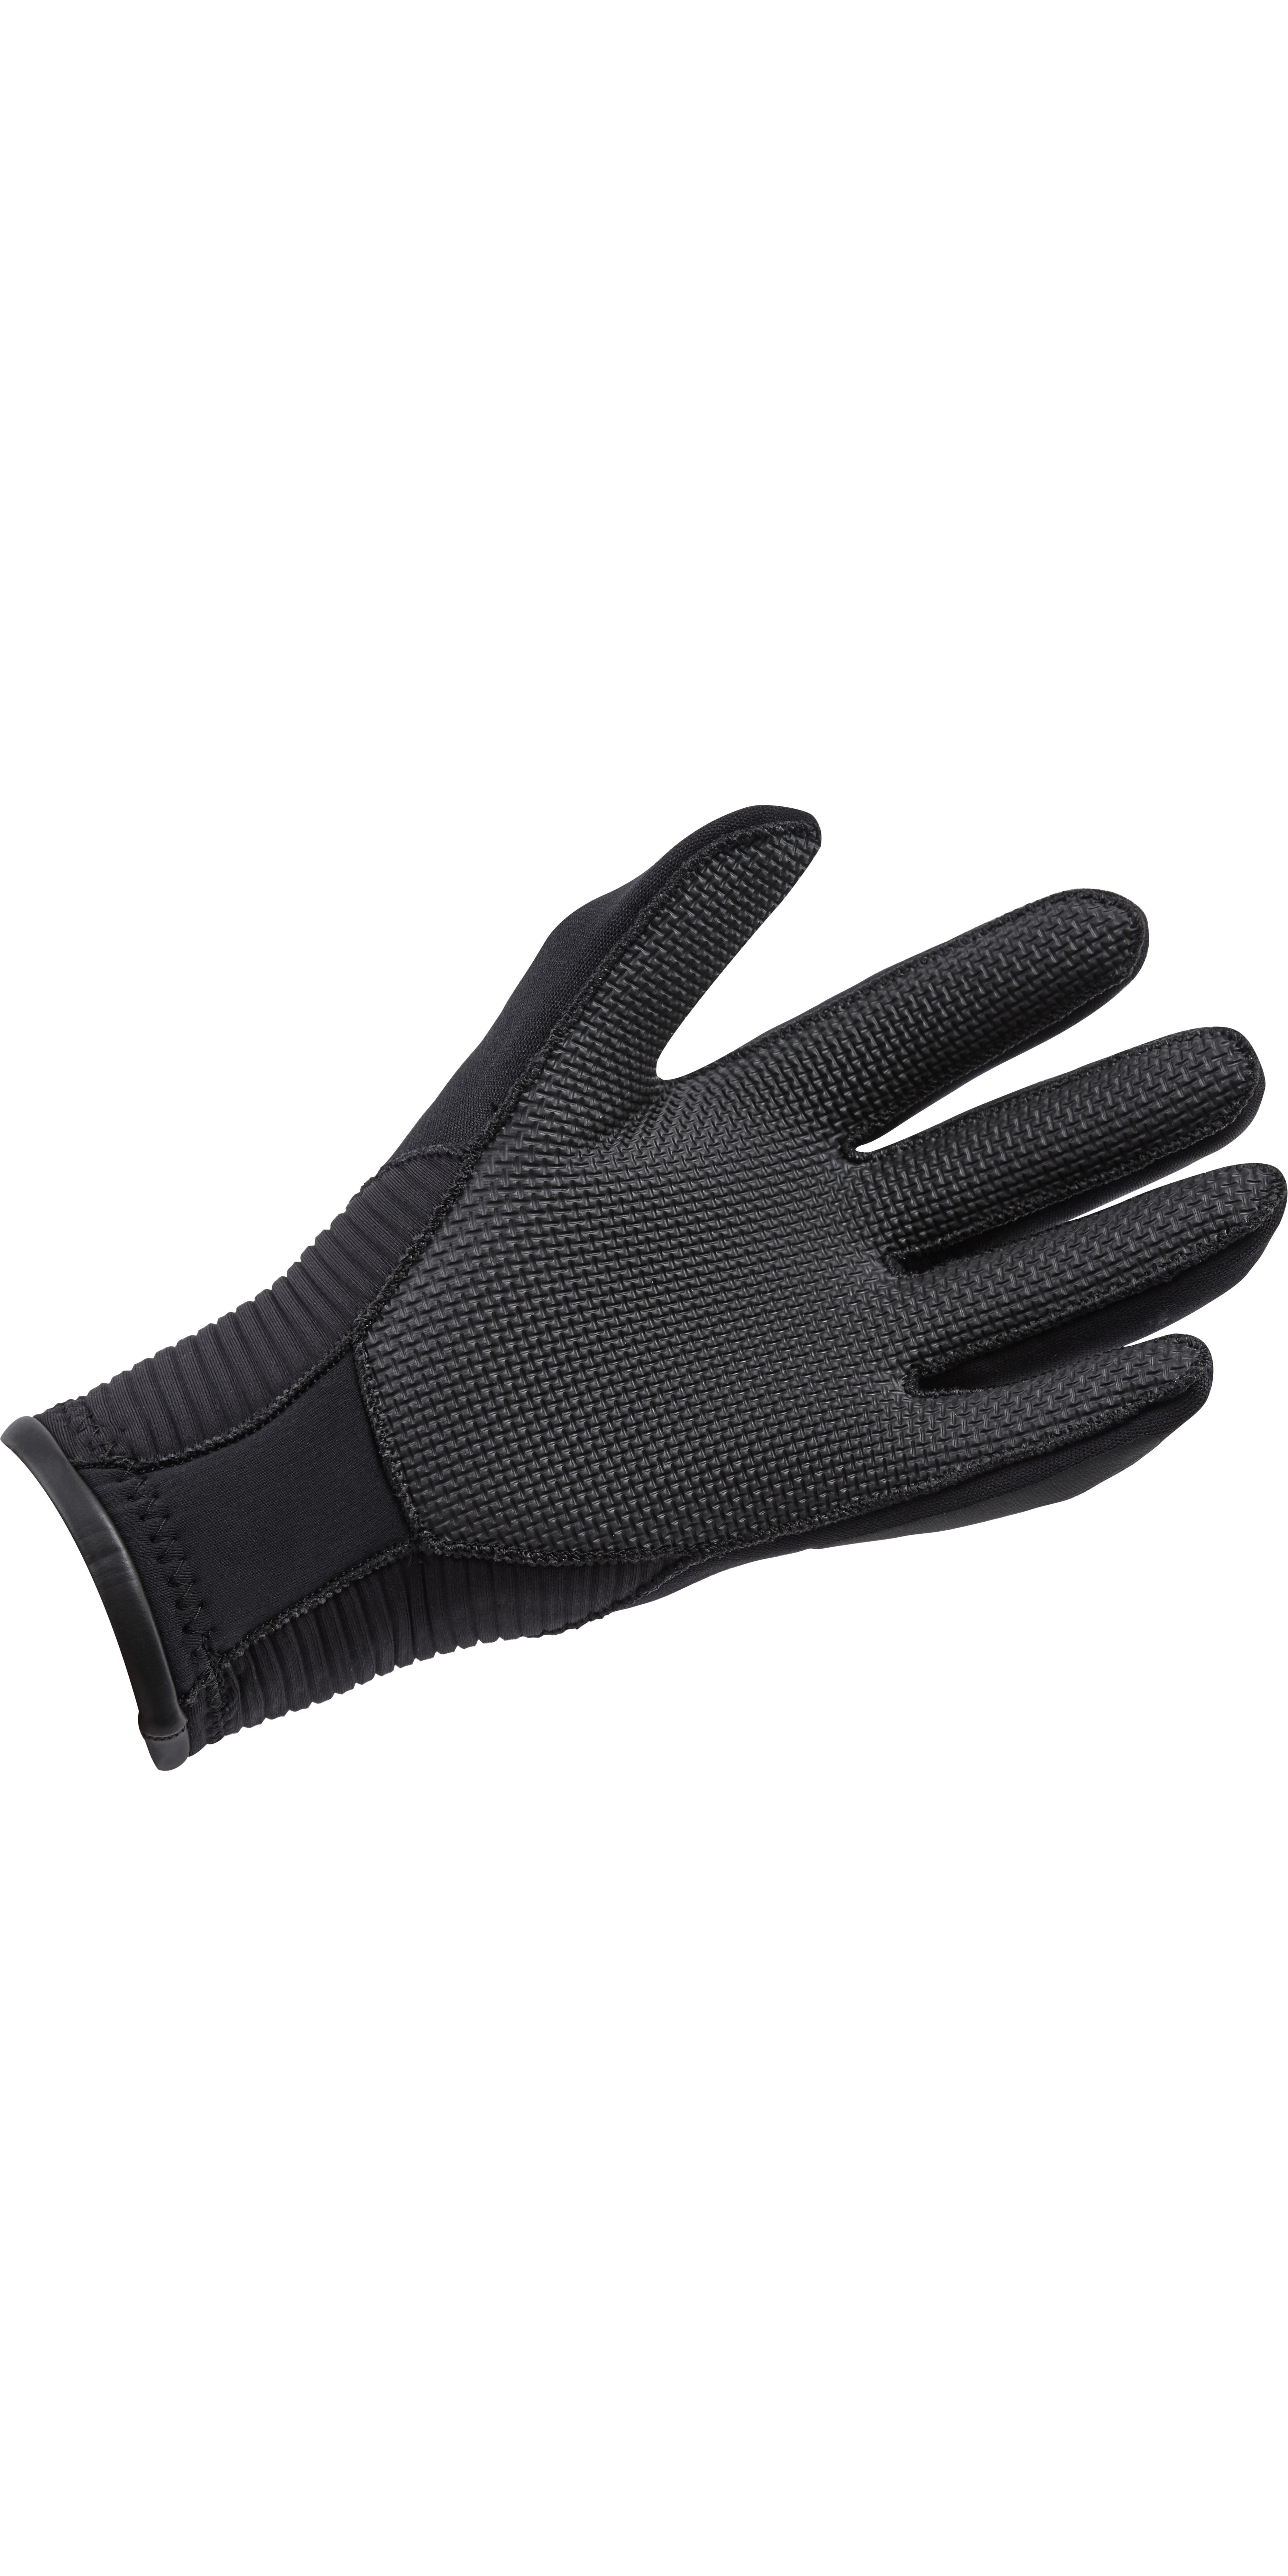 Gill 3mm Neoprene Winter Gloves in Black 7672